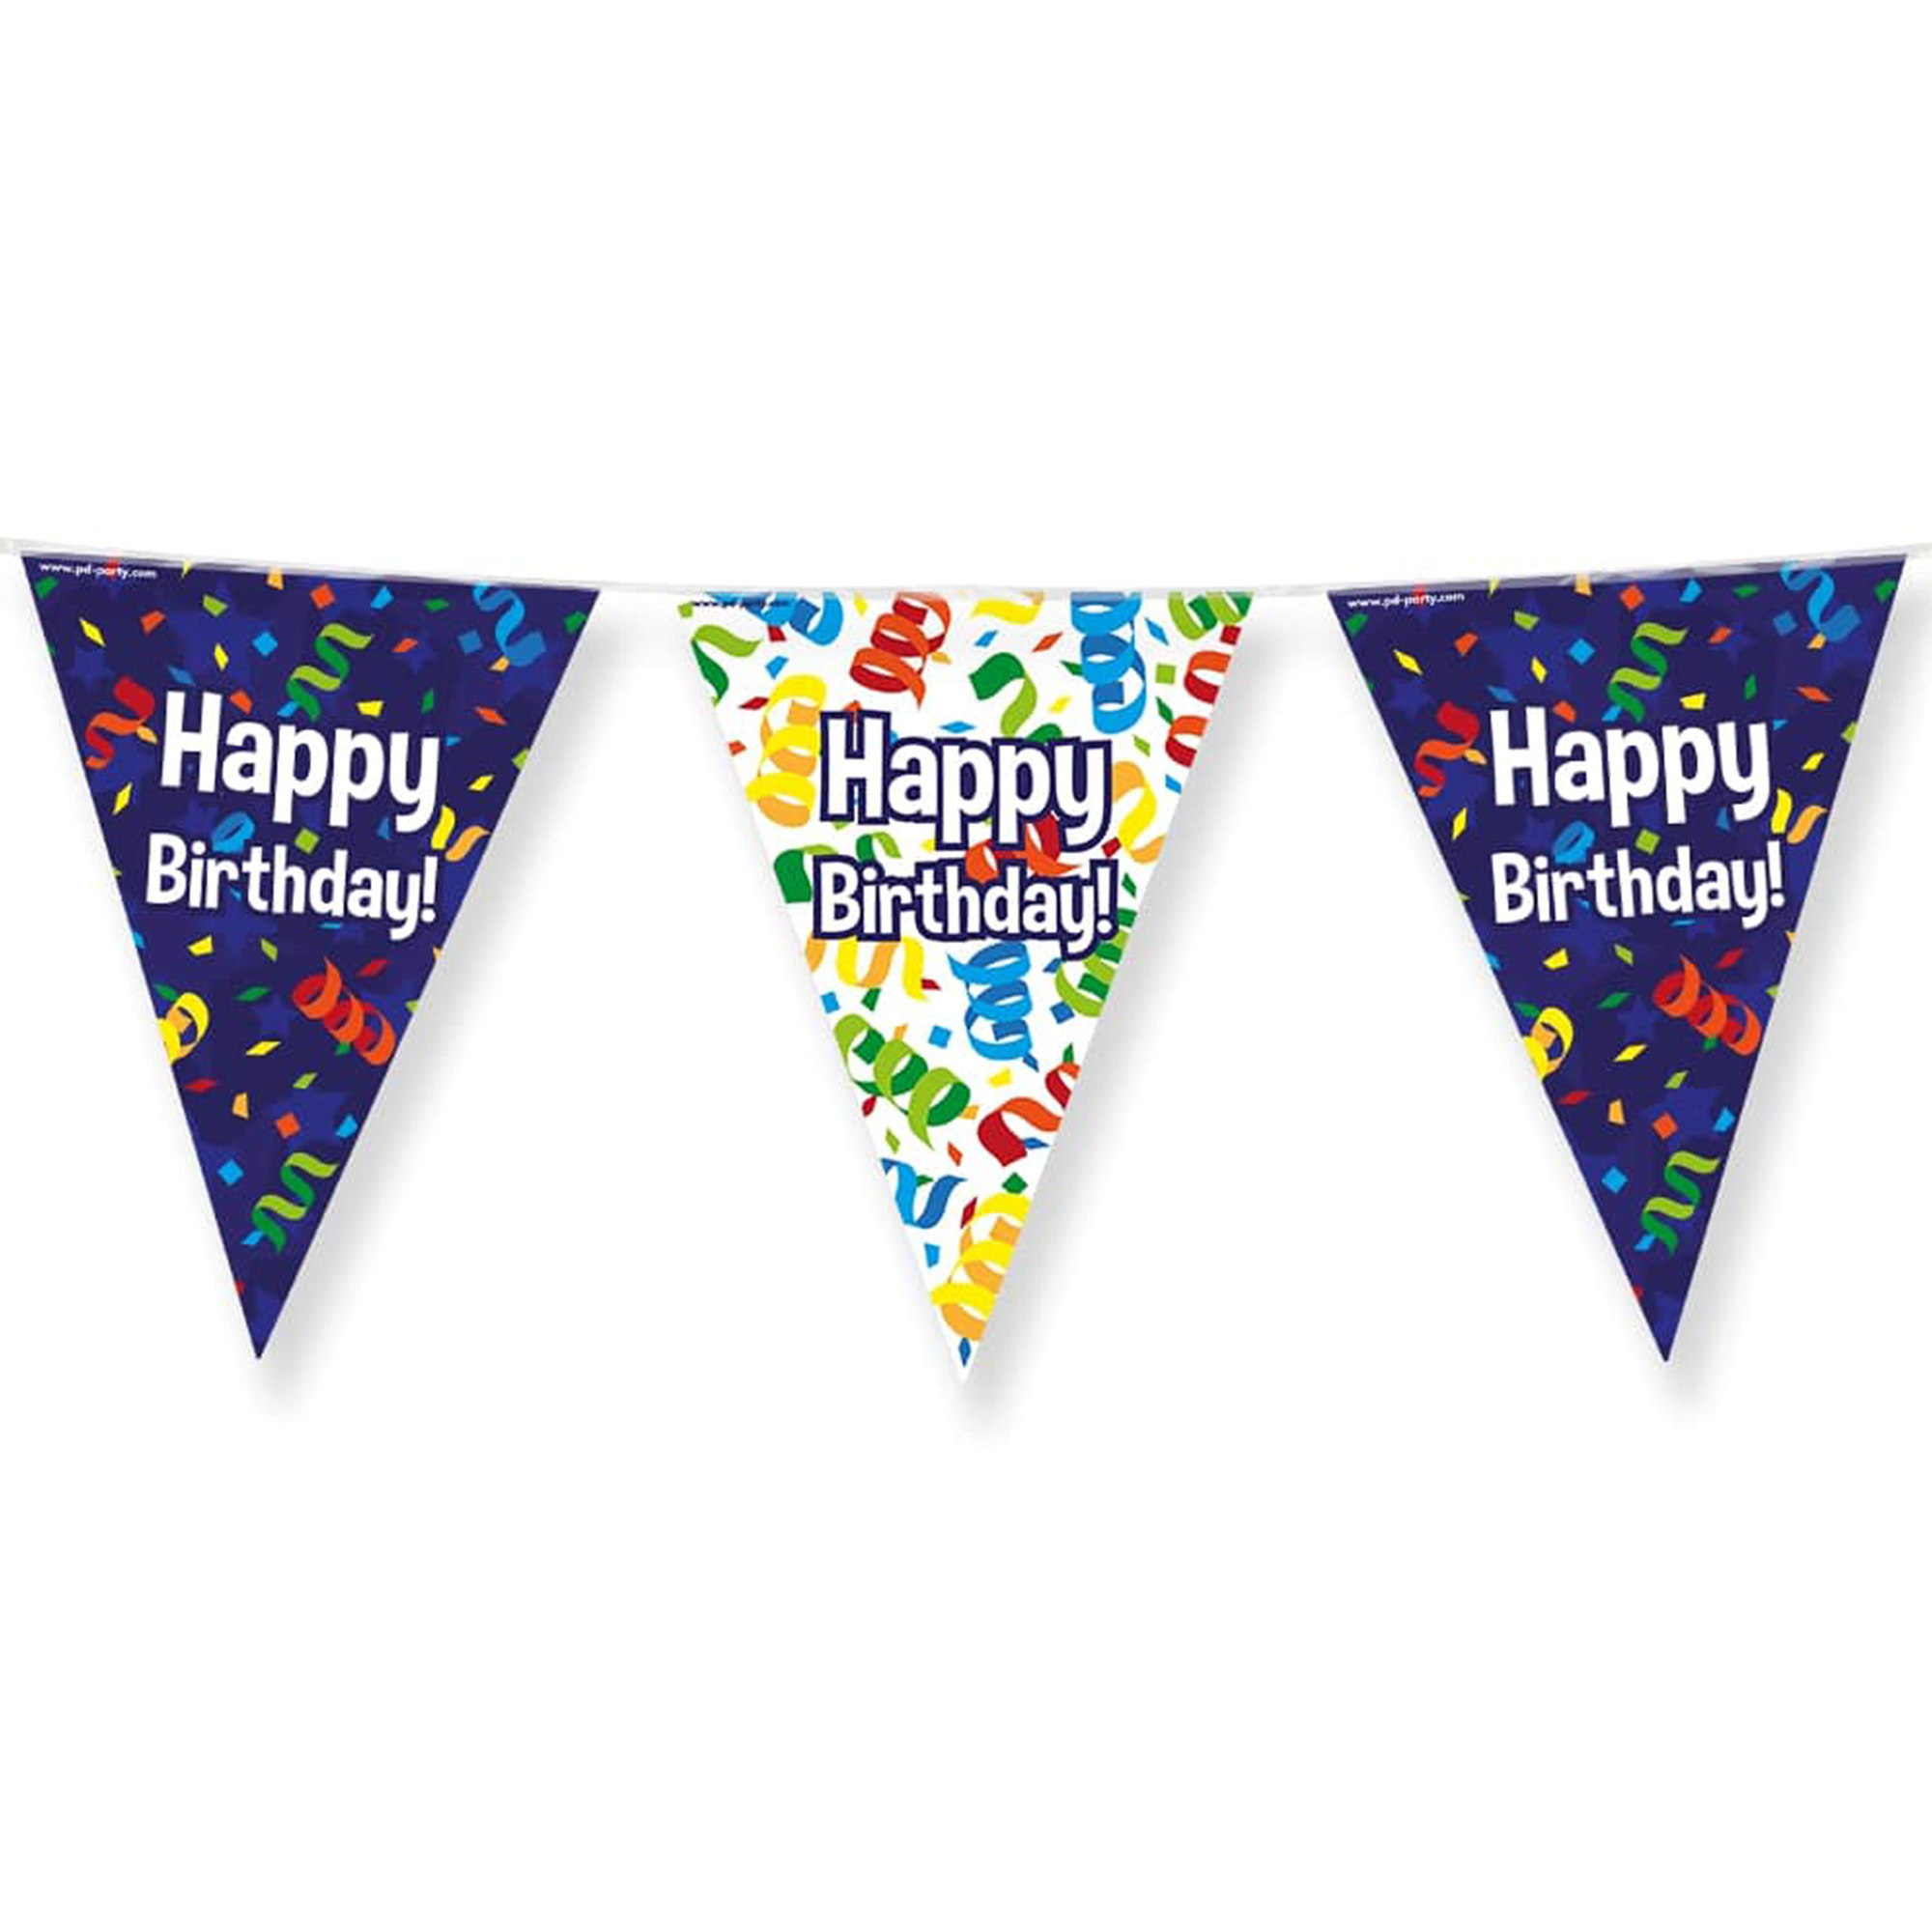 Paperdreams Vlaggenlijn Happy birthday-verjaardags feest 10m